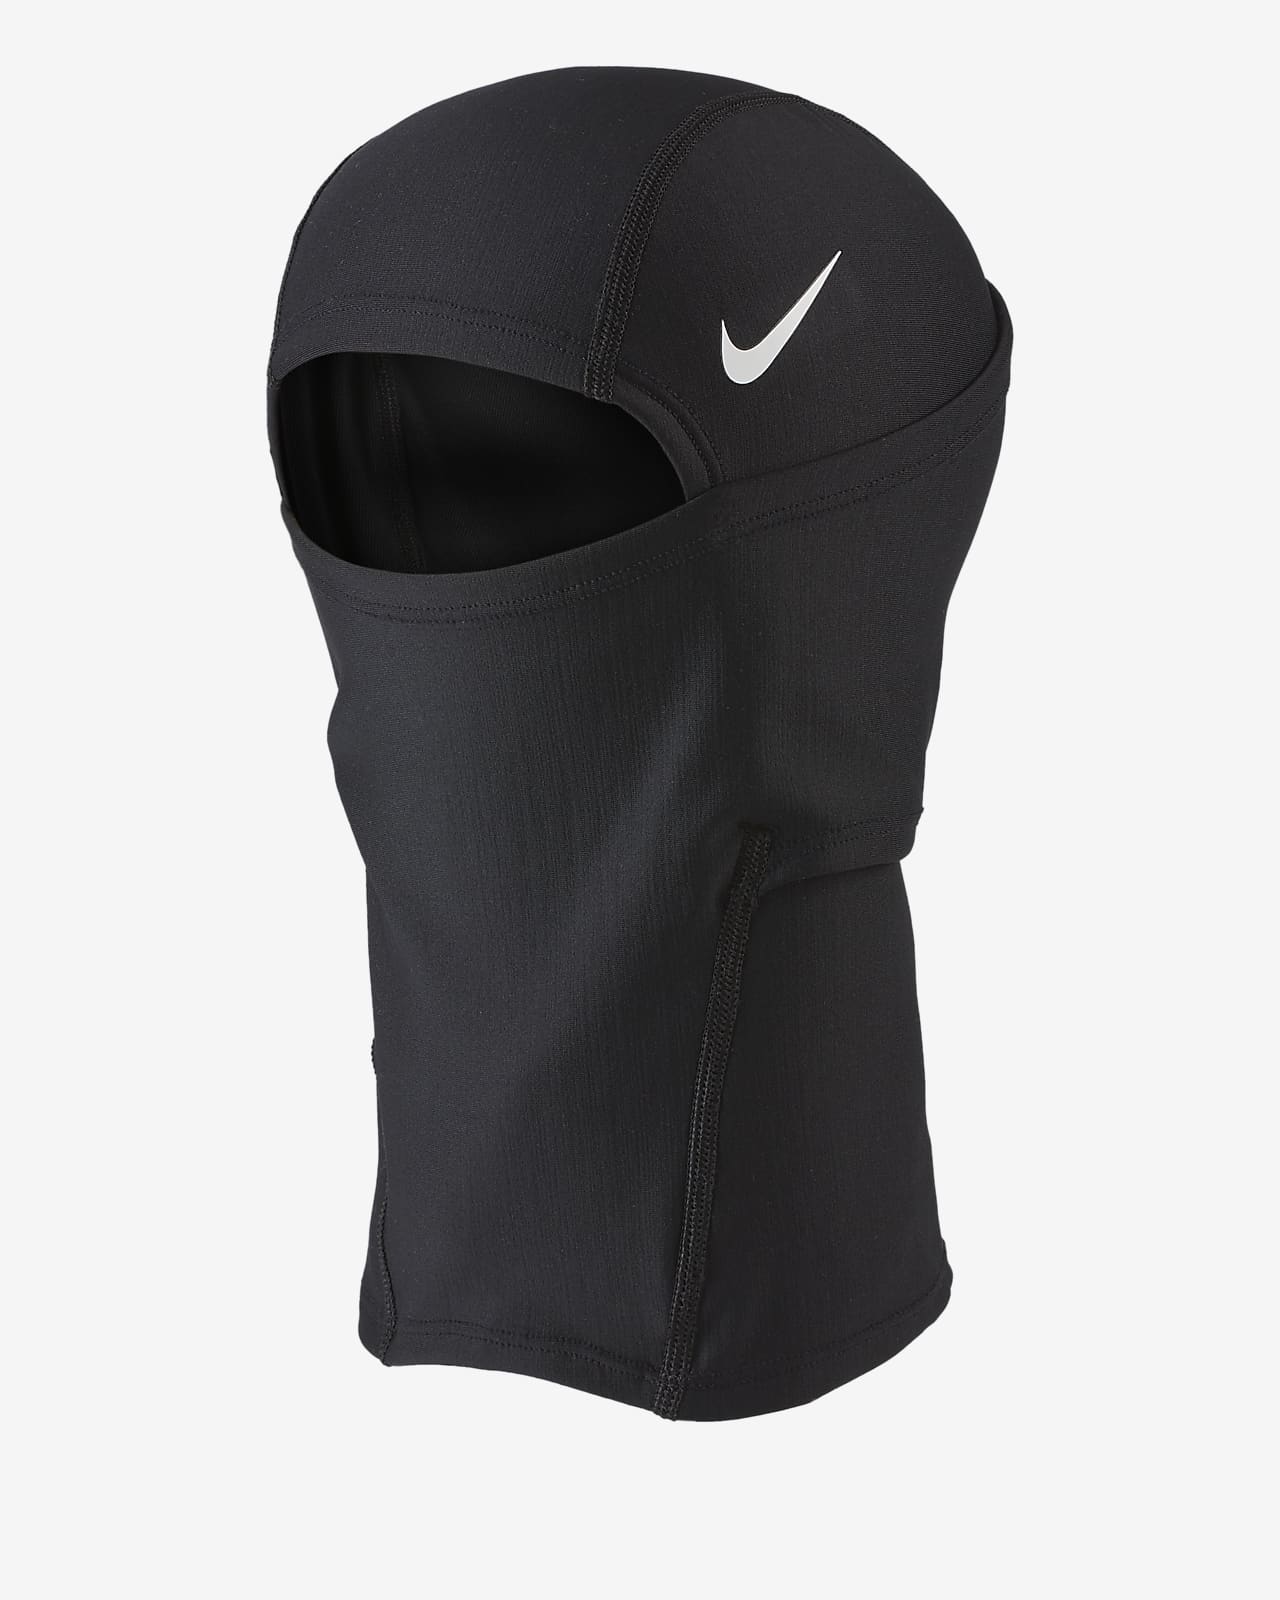 Capucha Nike Pro Hyperwarm.